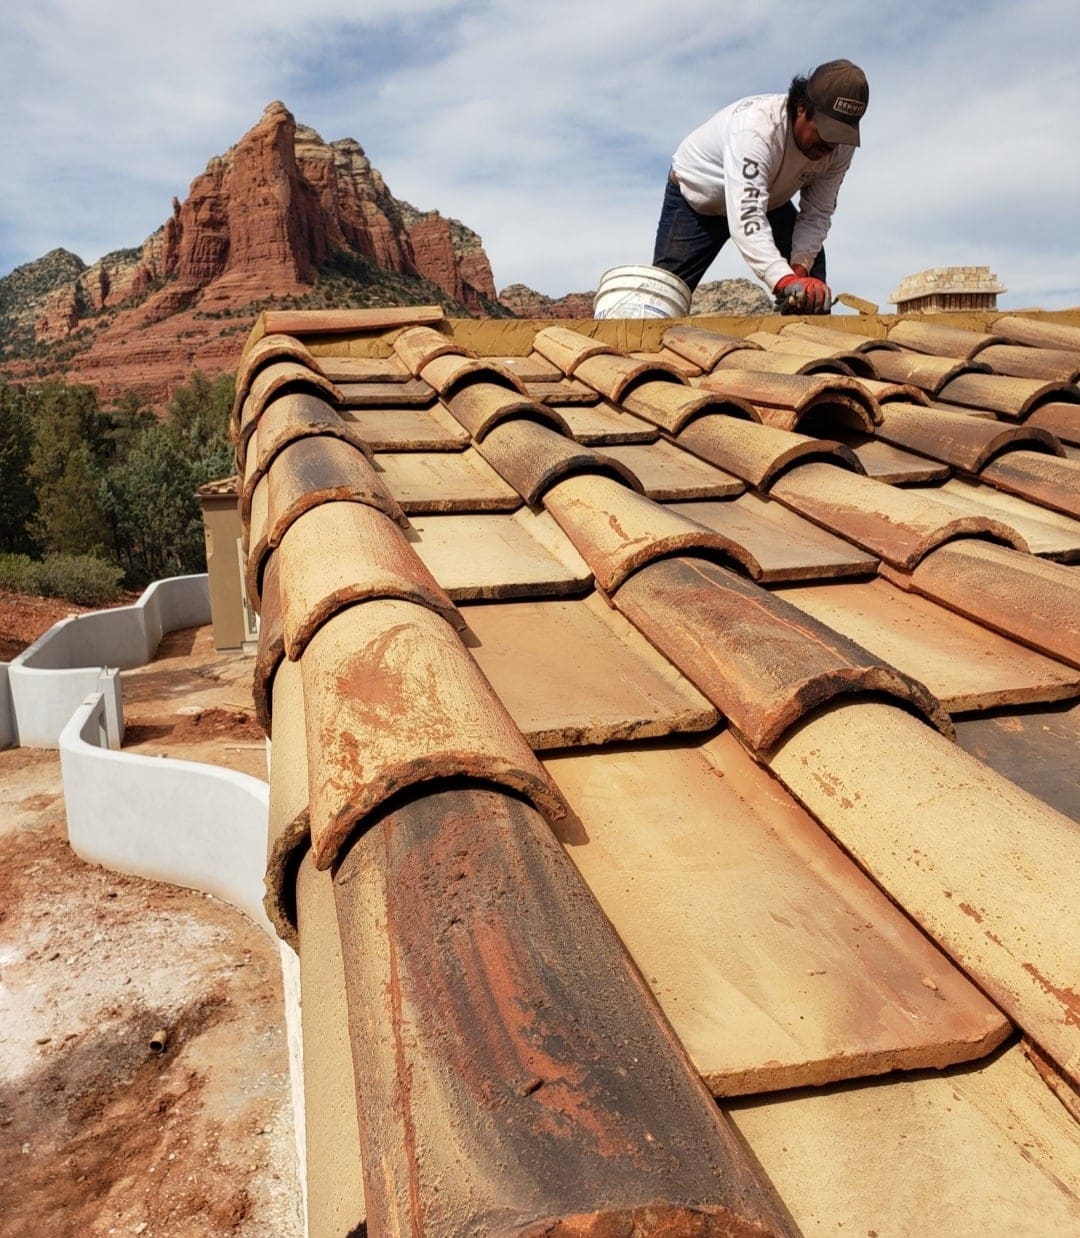 A roofer on new tile roof in AZ.